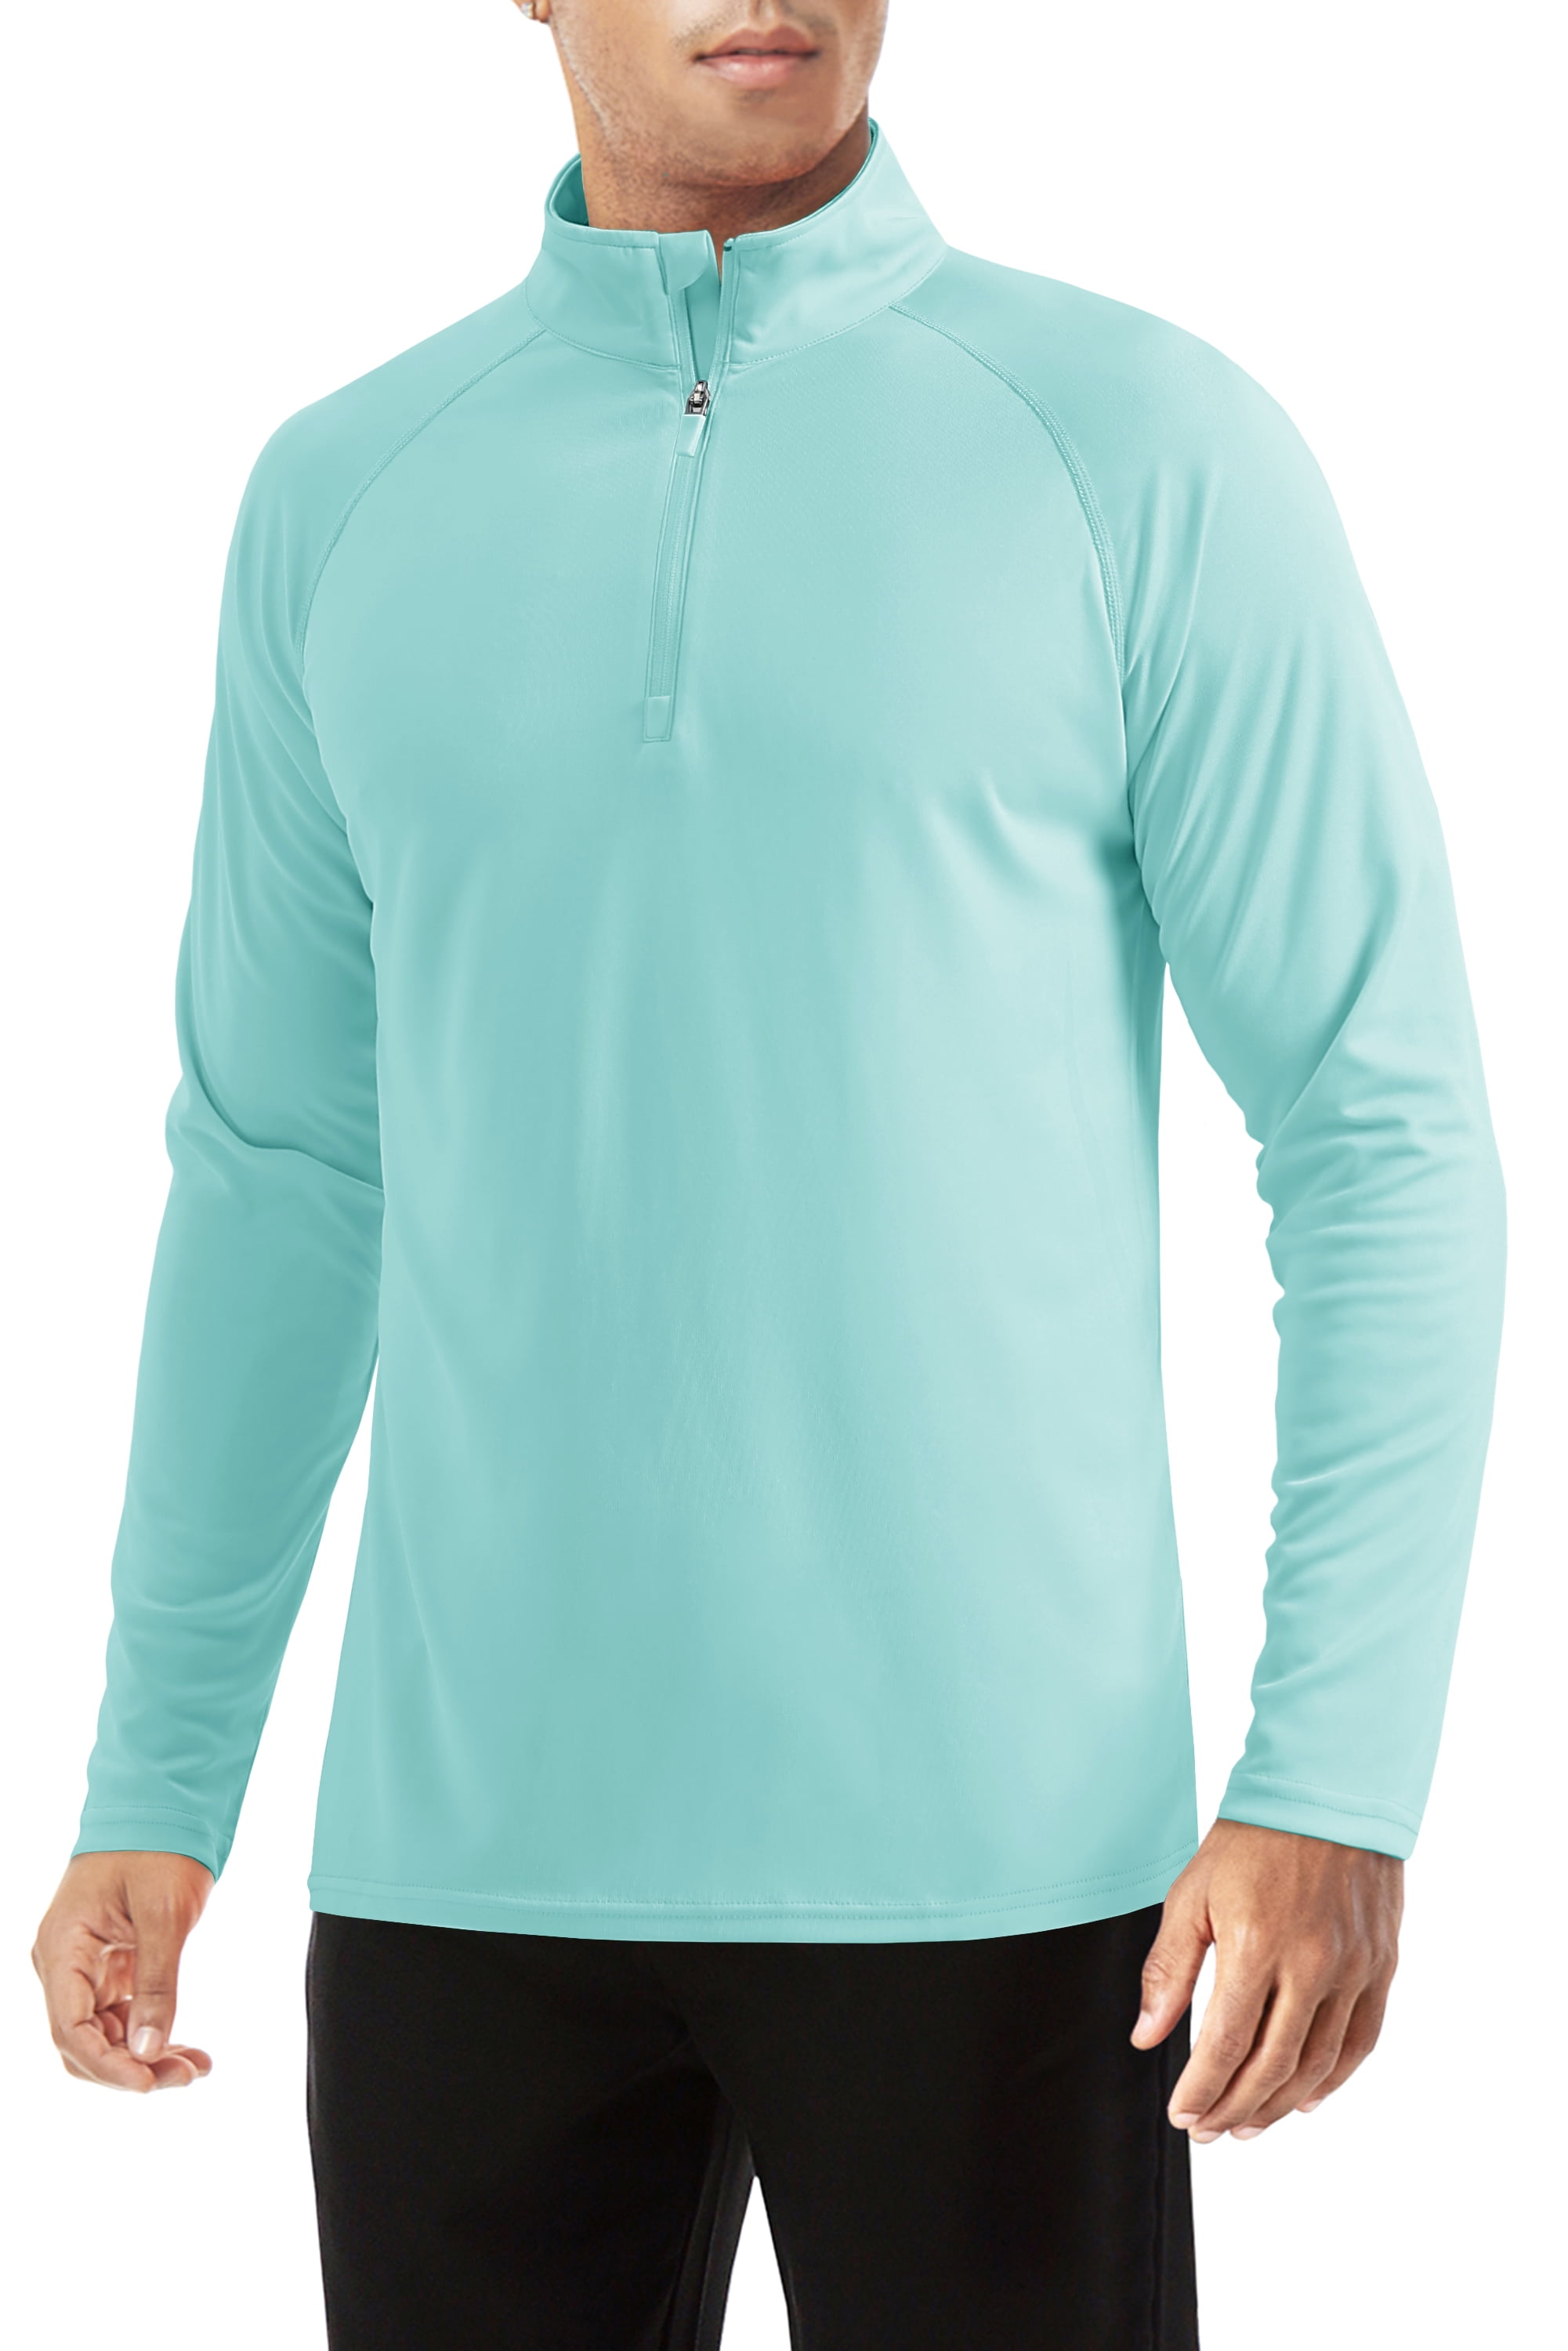 CRYSULLY Men's Lightweight Polyester Apparel Quarter Zip Pullover Summer  Outdoor Beach 50+ Sun Shirt Azure